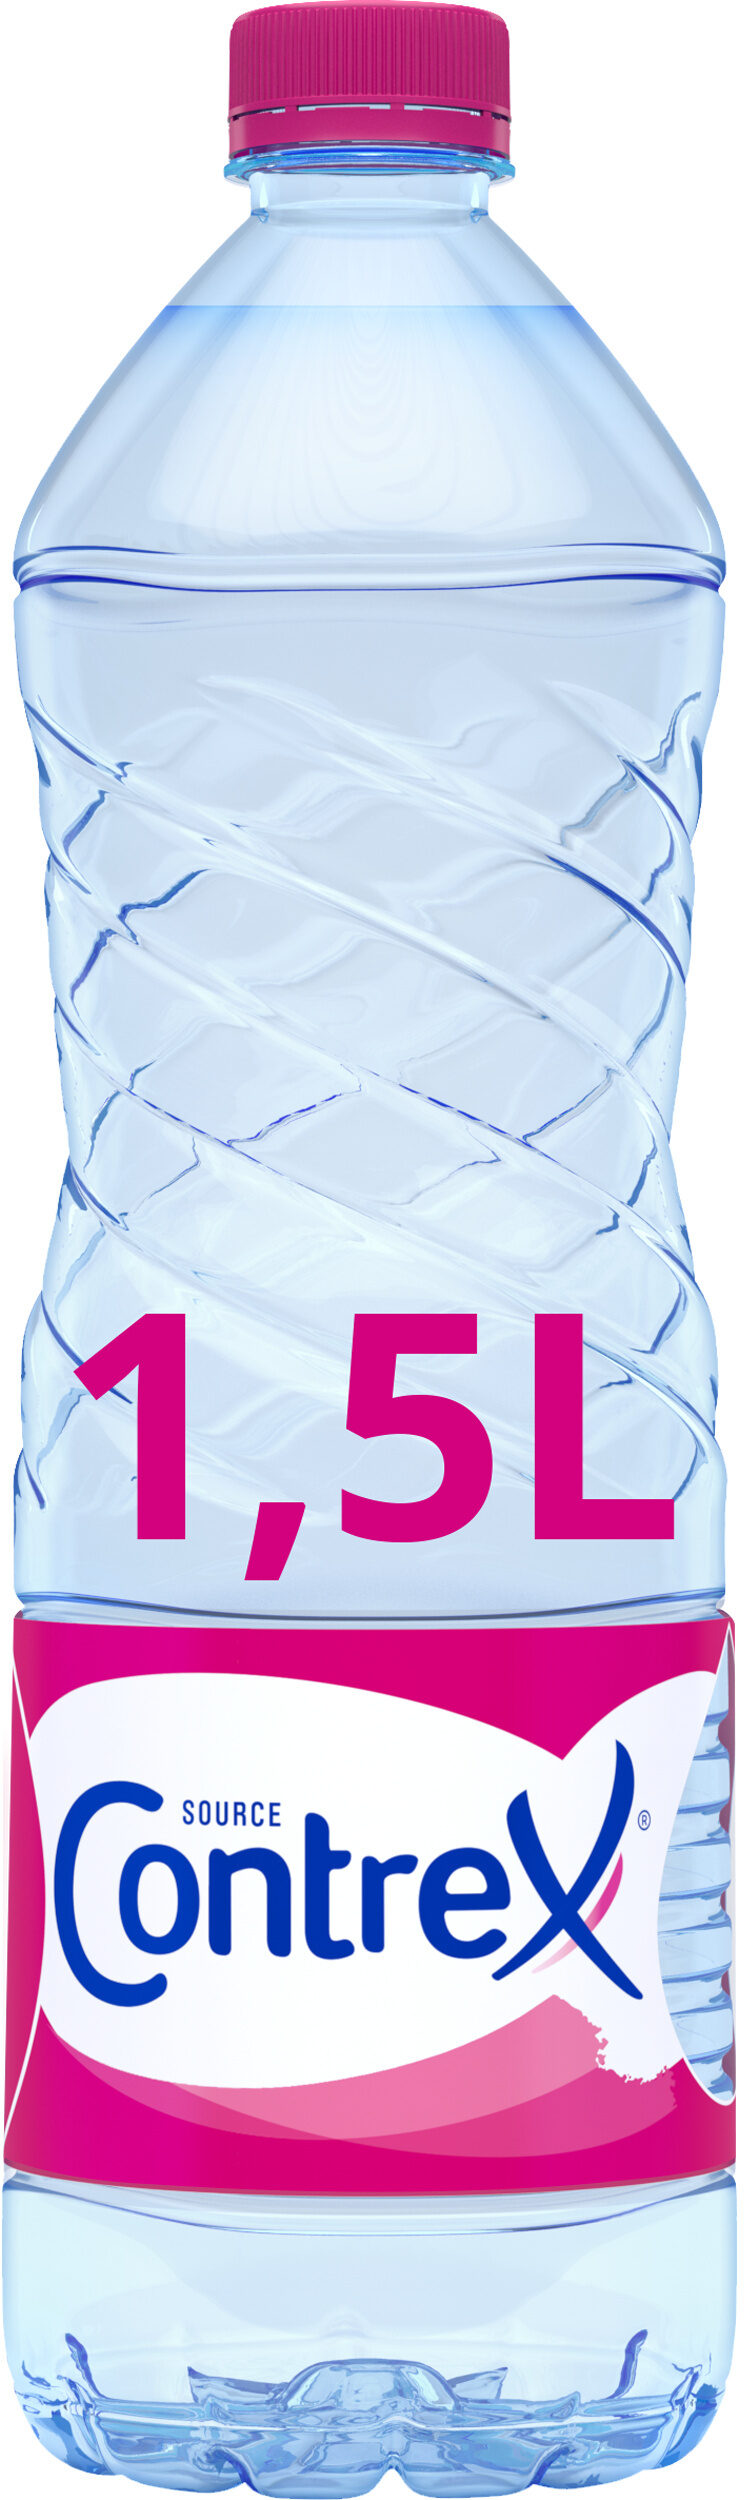 CONTREX eau minérale naturelle 1,5L - Produit - fr